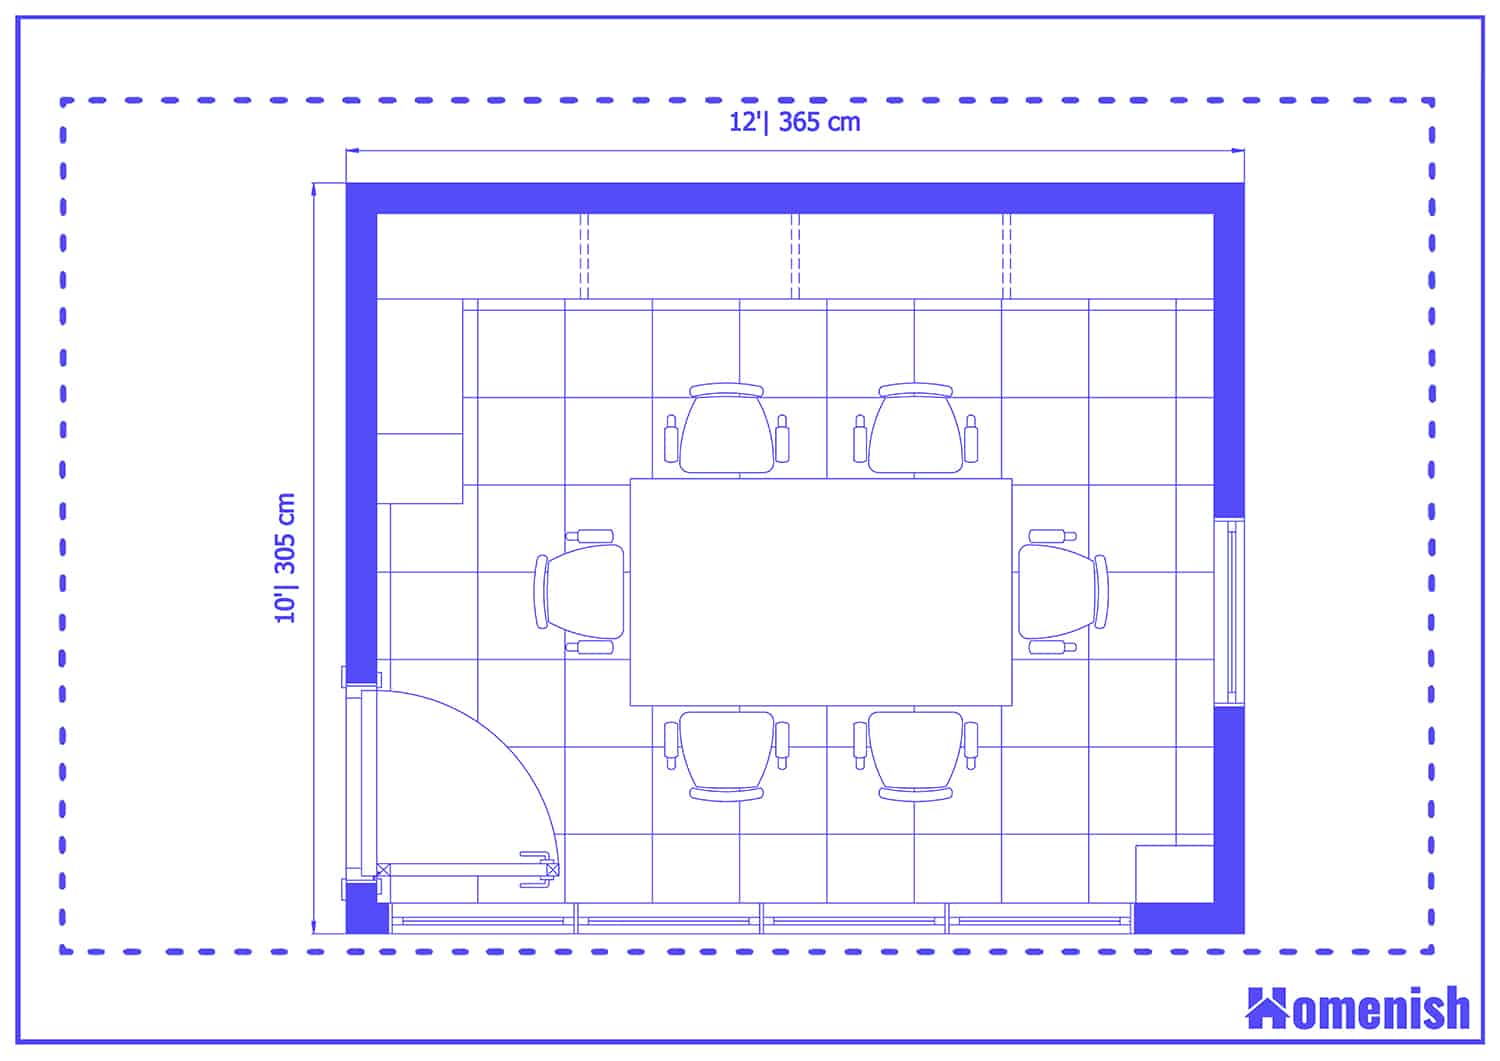 Industrial Office Space Floor Plan